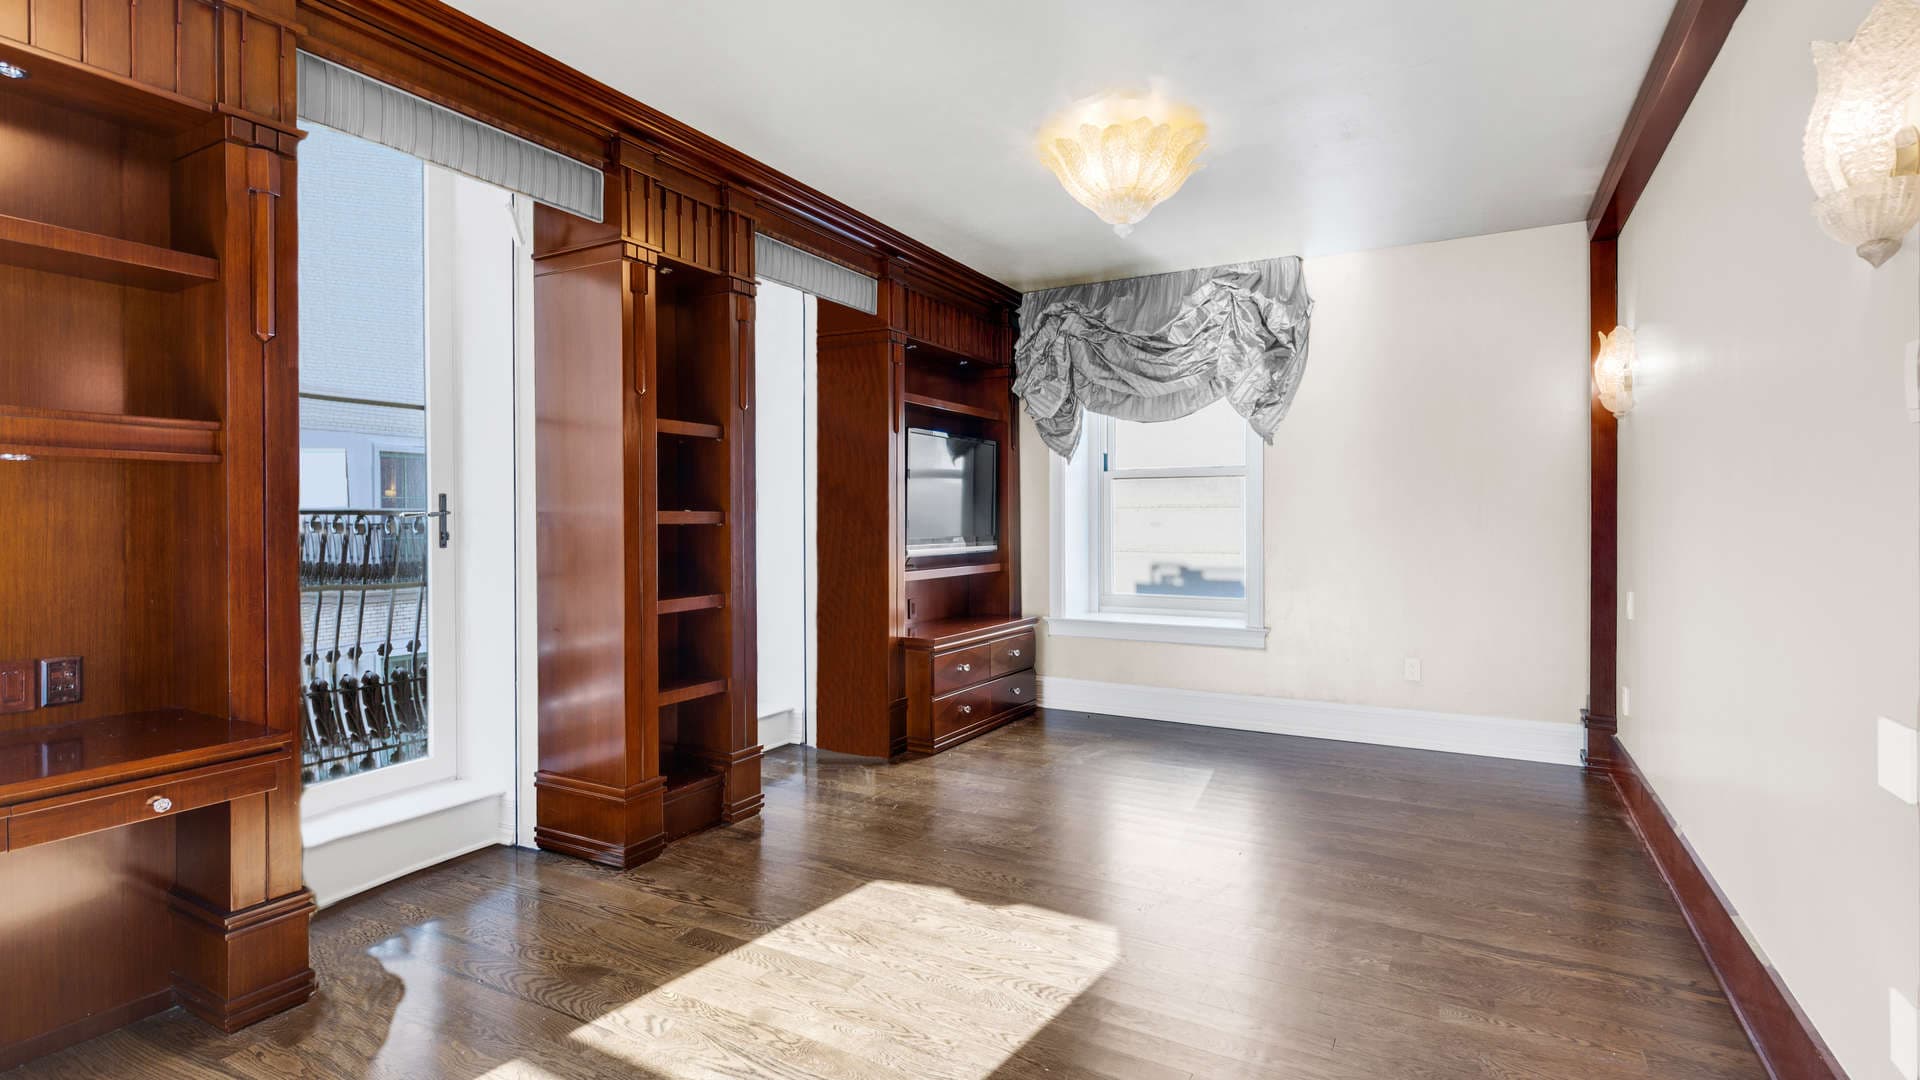 3 Bedroom Apartment For Sale 1 Central Park South Lp01669 1b83a5f604c4d700.jpg